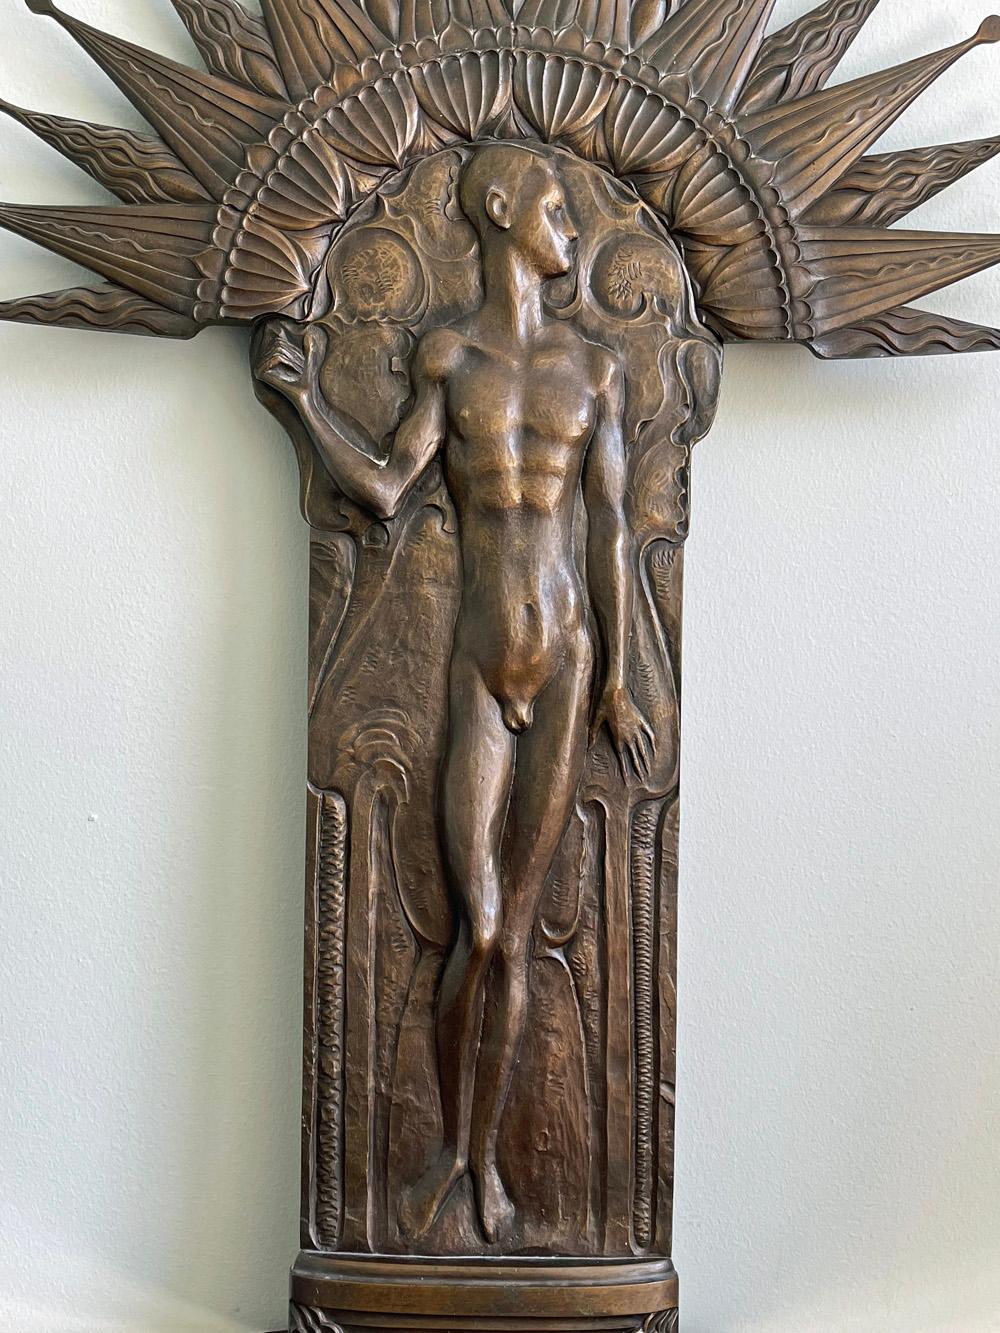 Grande et spectaculaire, cette sculpture en bronze en relief représente un nu masculin debout sur un sol riche en motifs décoratifs courbes - comme si l'atmosphère était vivante - surmonté d'une auréole audacieuse et rayonnante. Conçue pour être